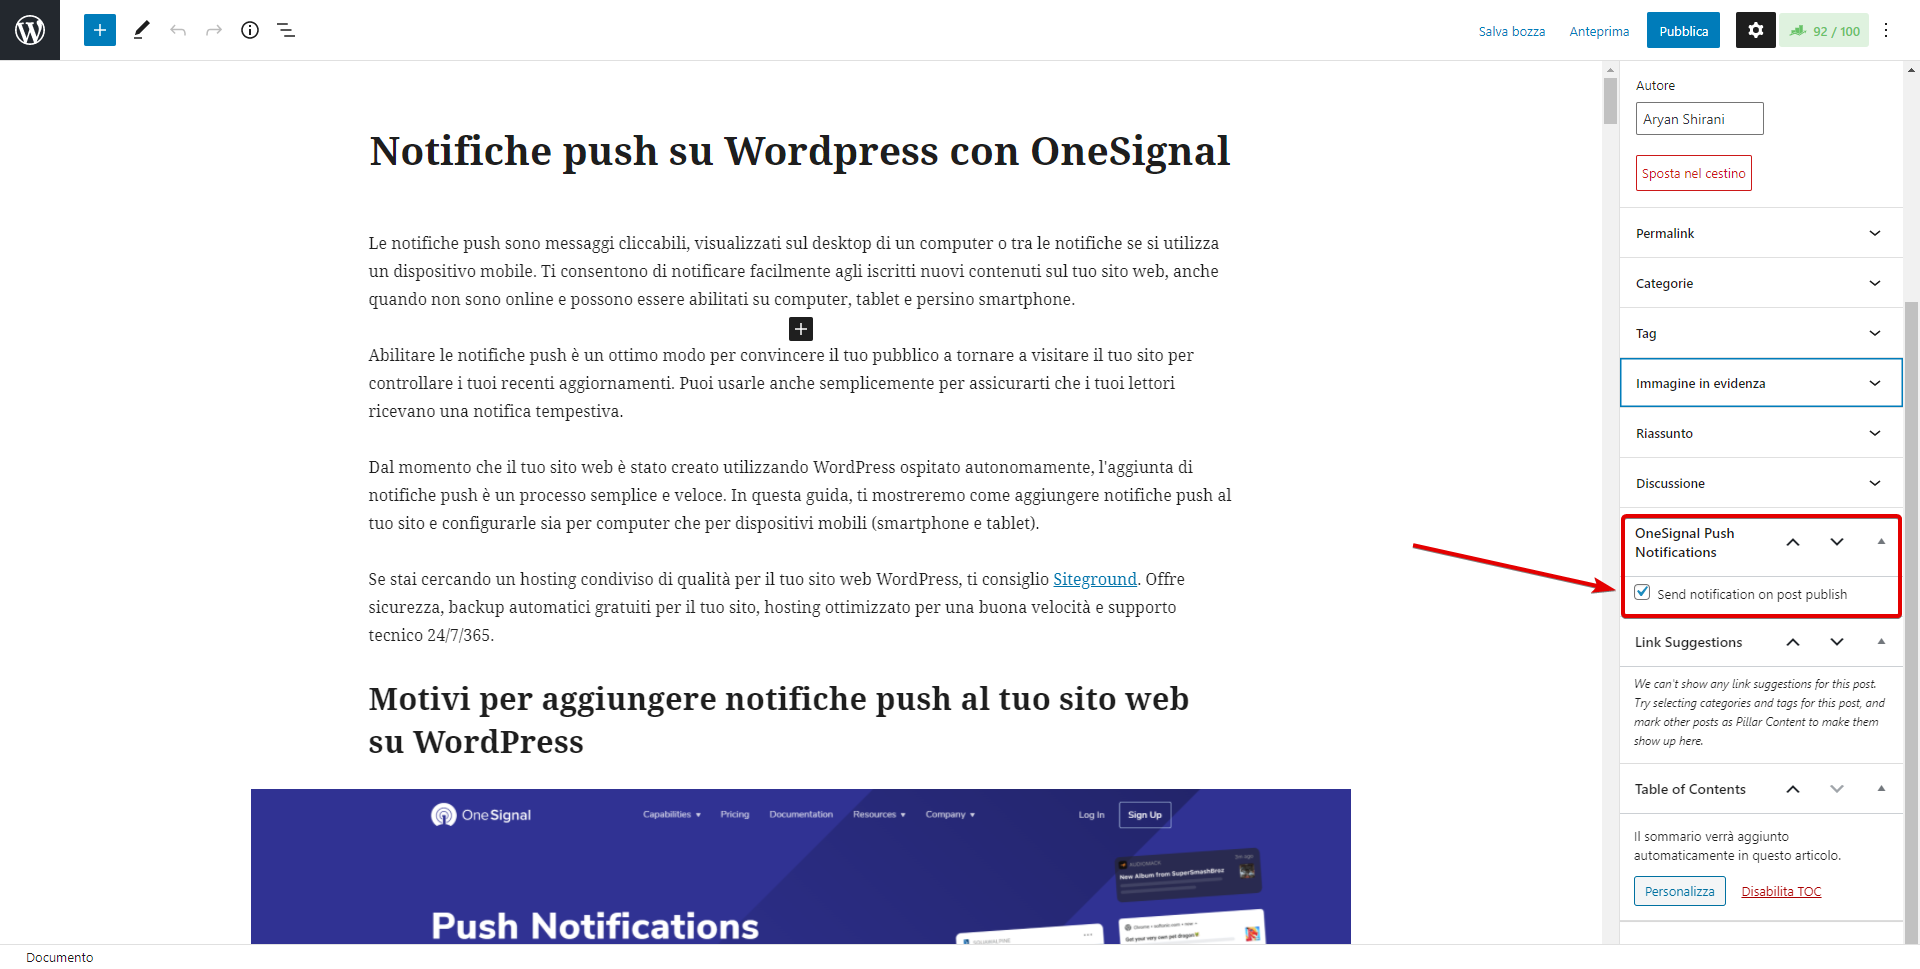 Invia notifica push dopo aggiornamento onesignal wordpress